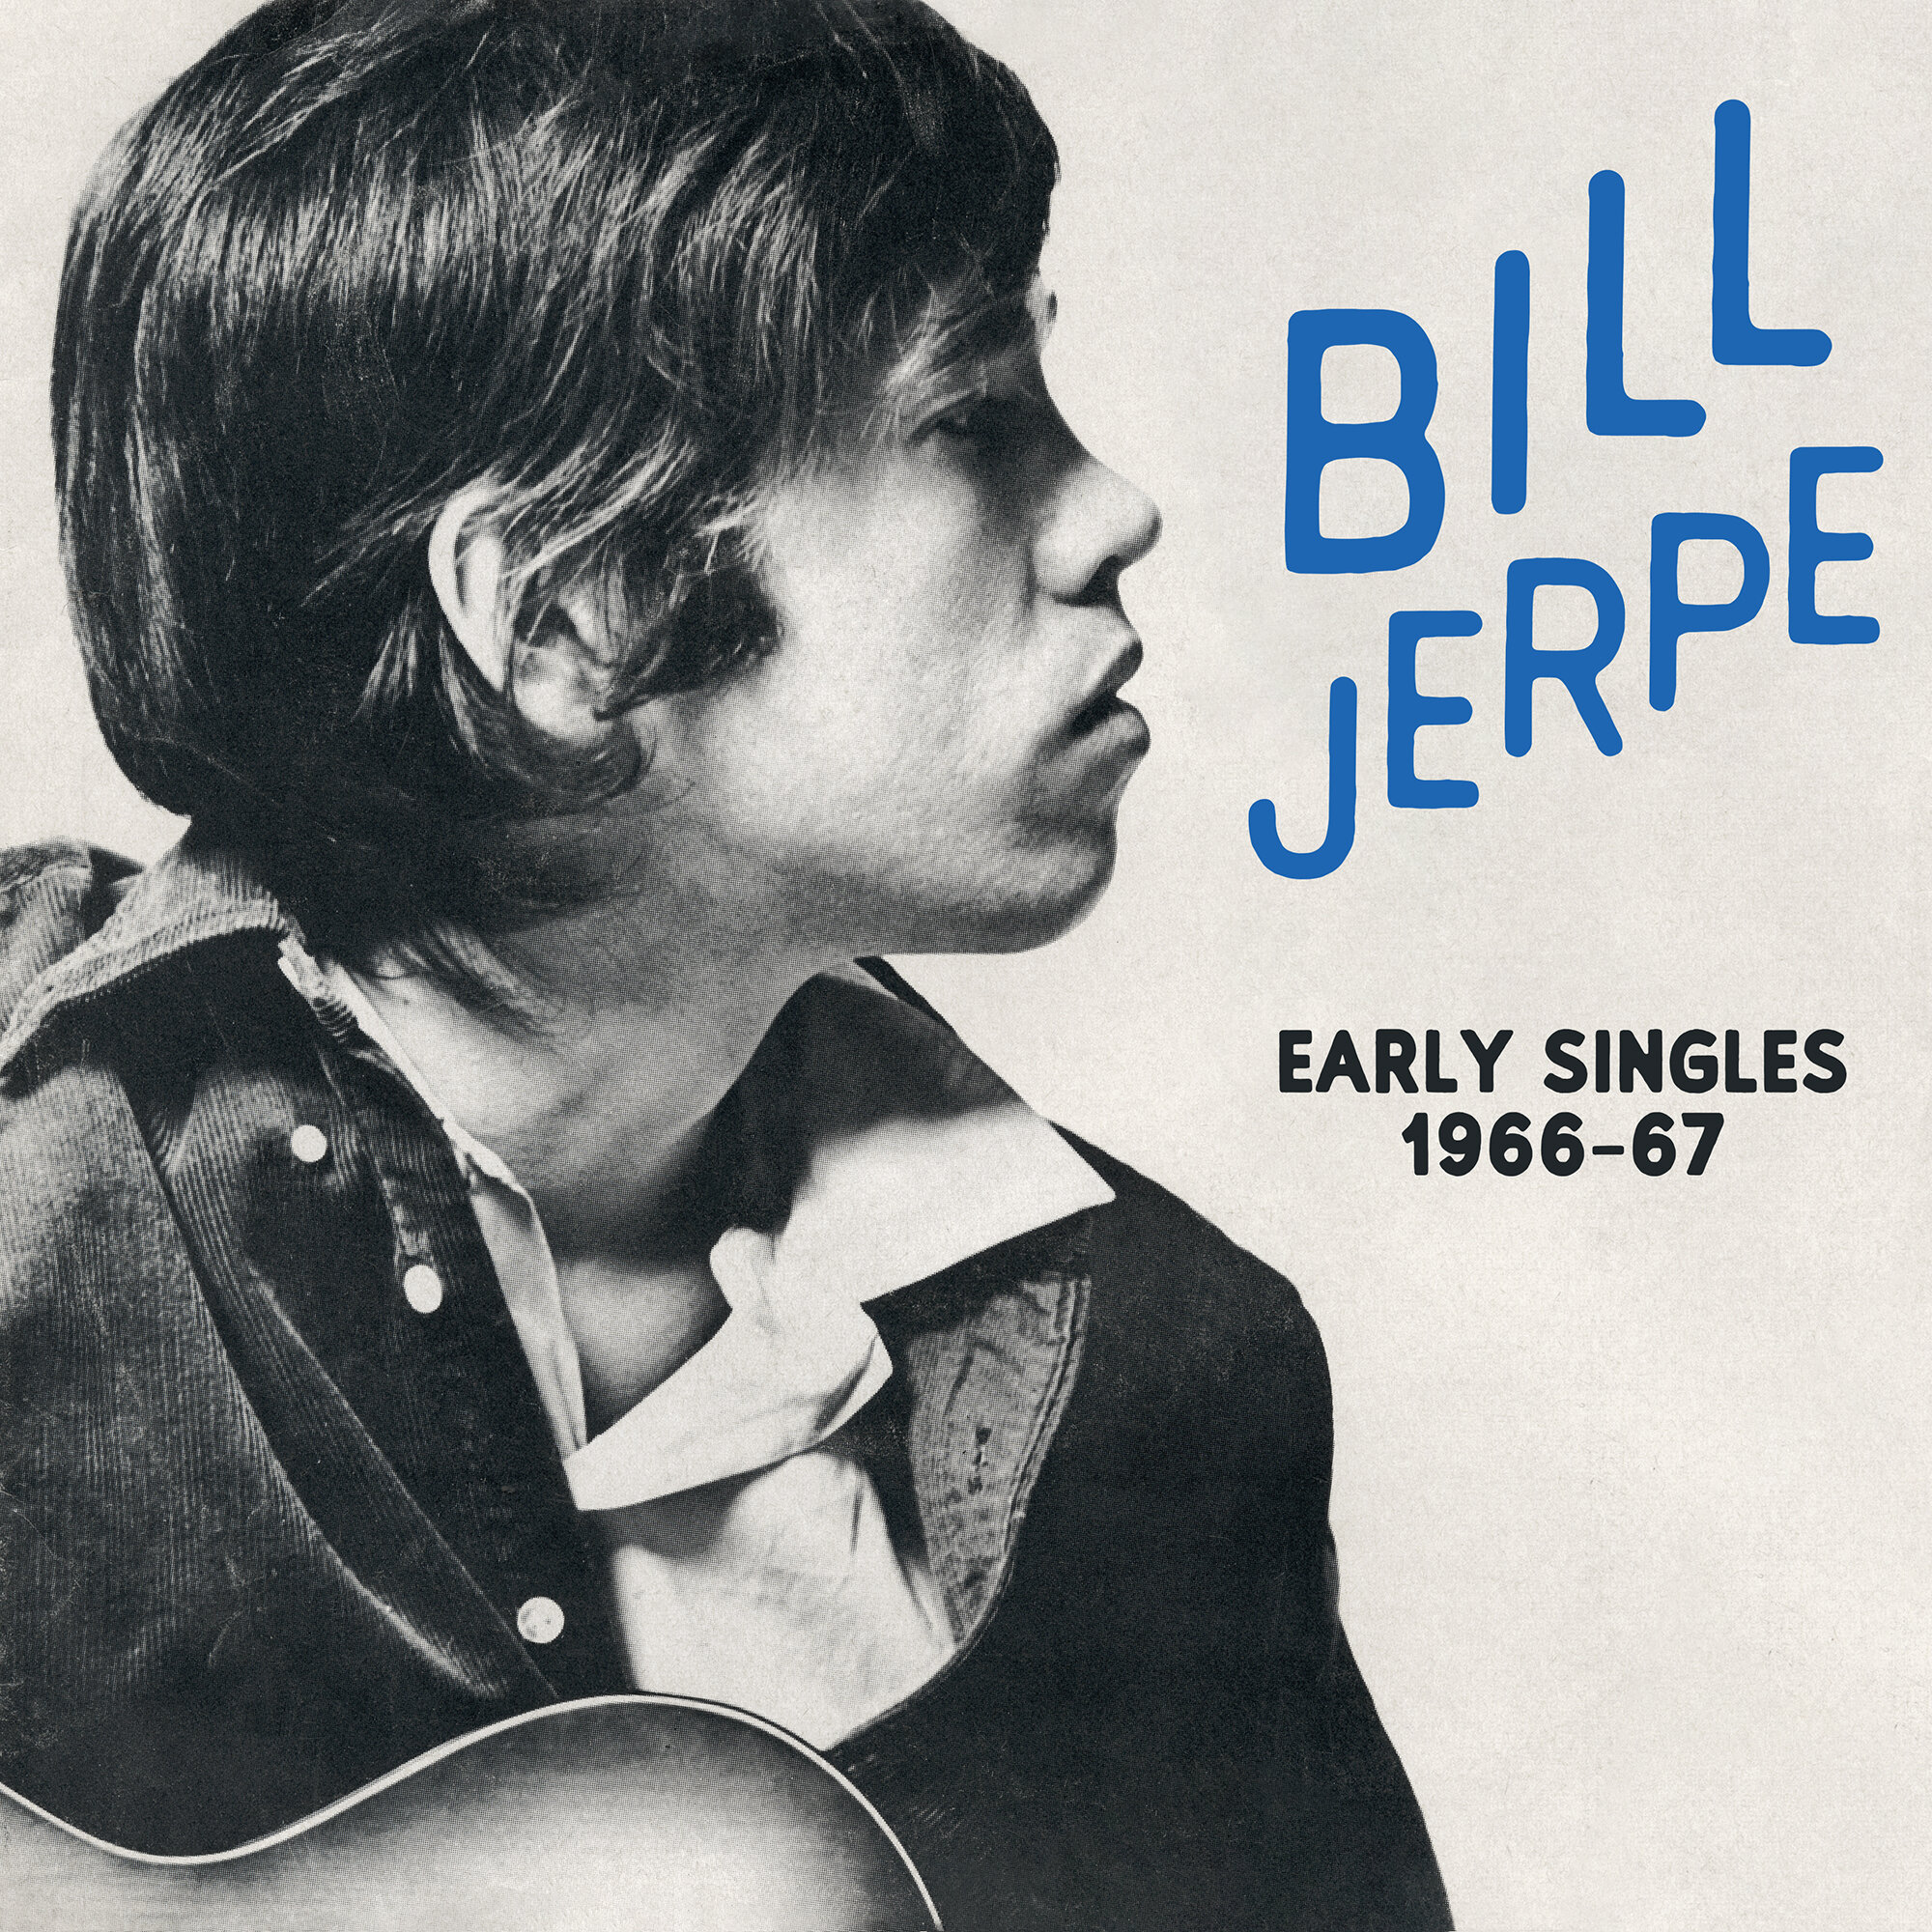 BILL JERPE - Early Singles 1966-67